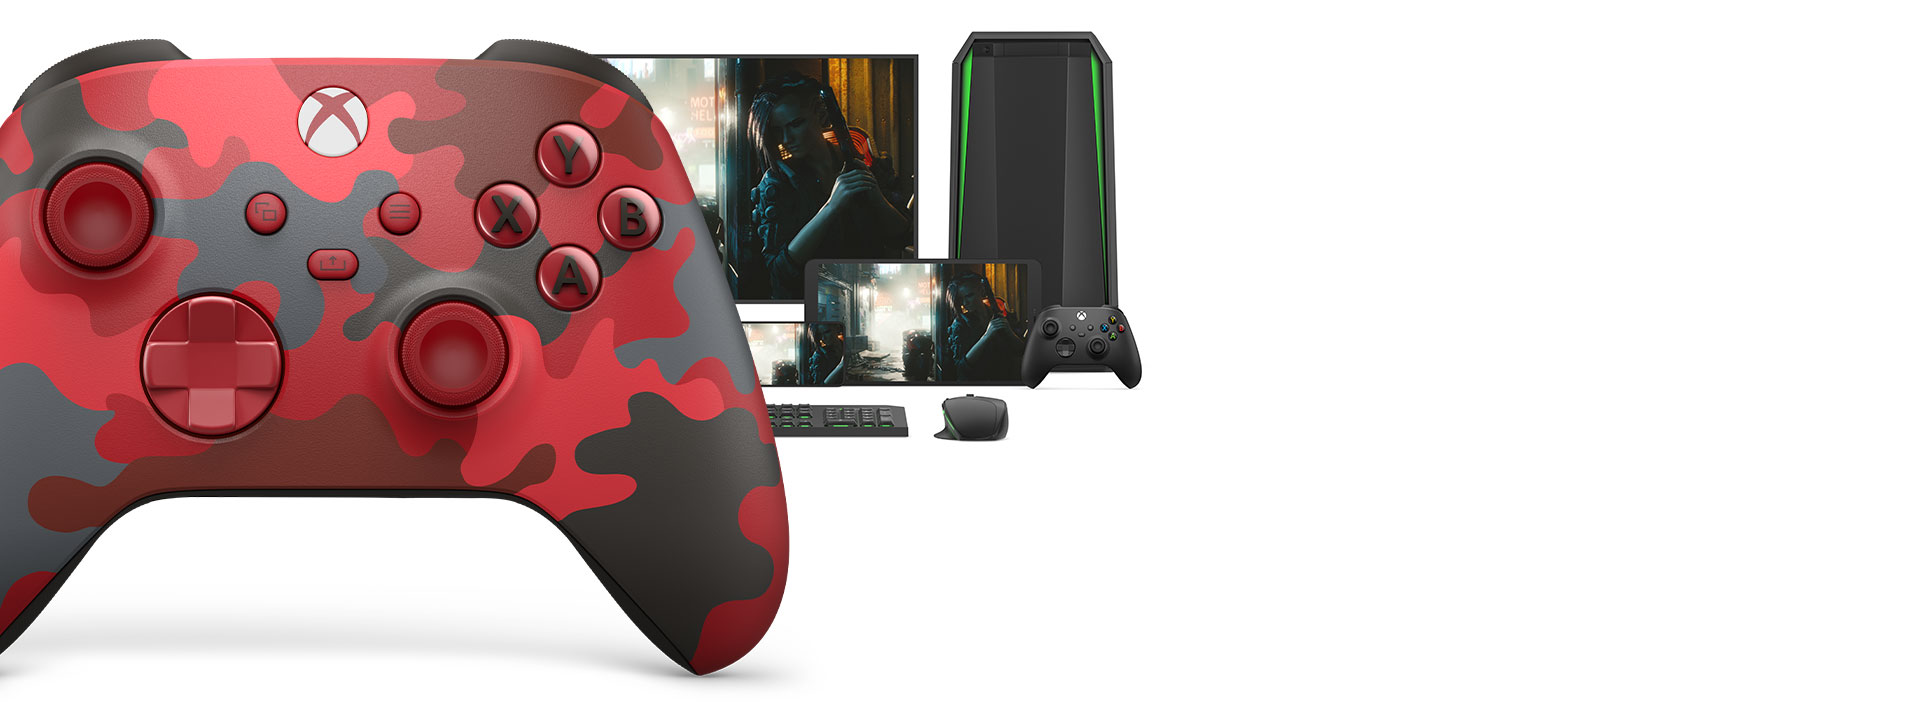 Trådløs Xbox-controller Daystrike Camo med en computer, tv og mobilenheder